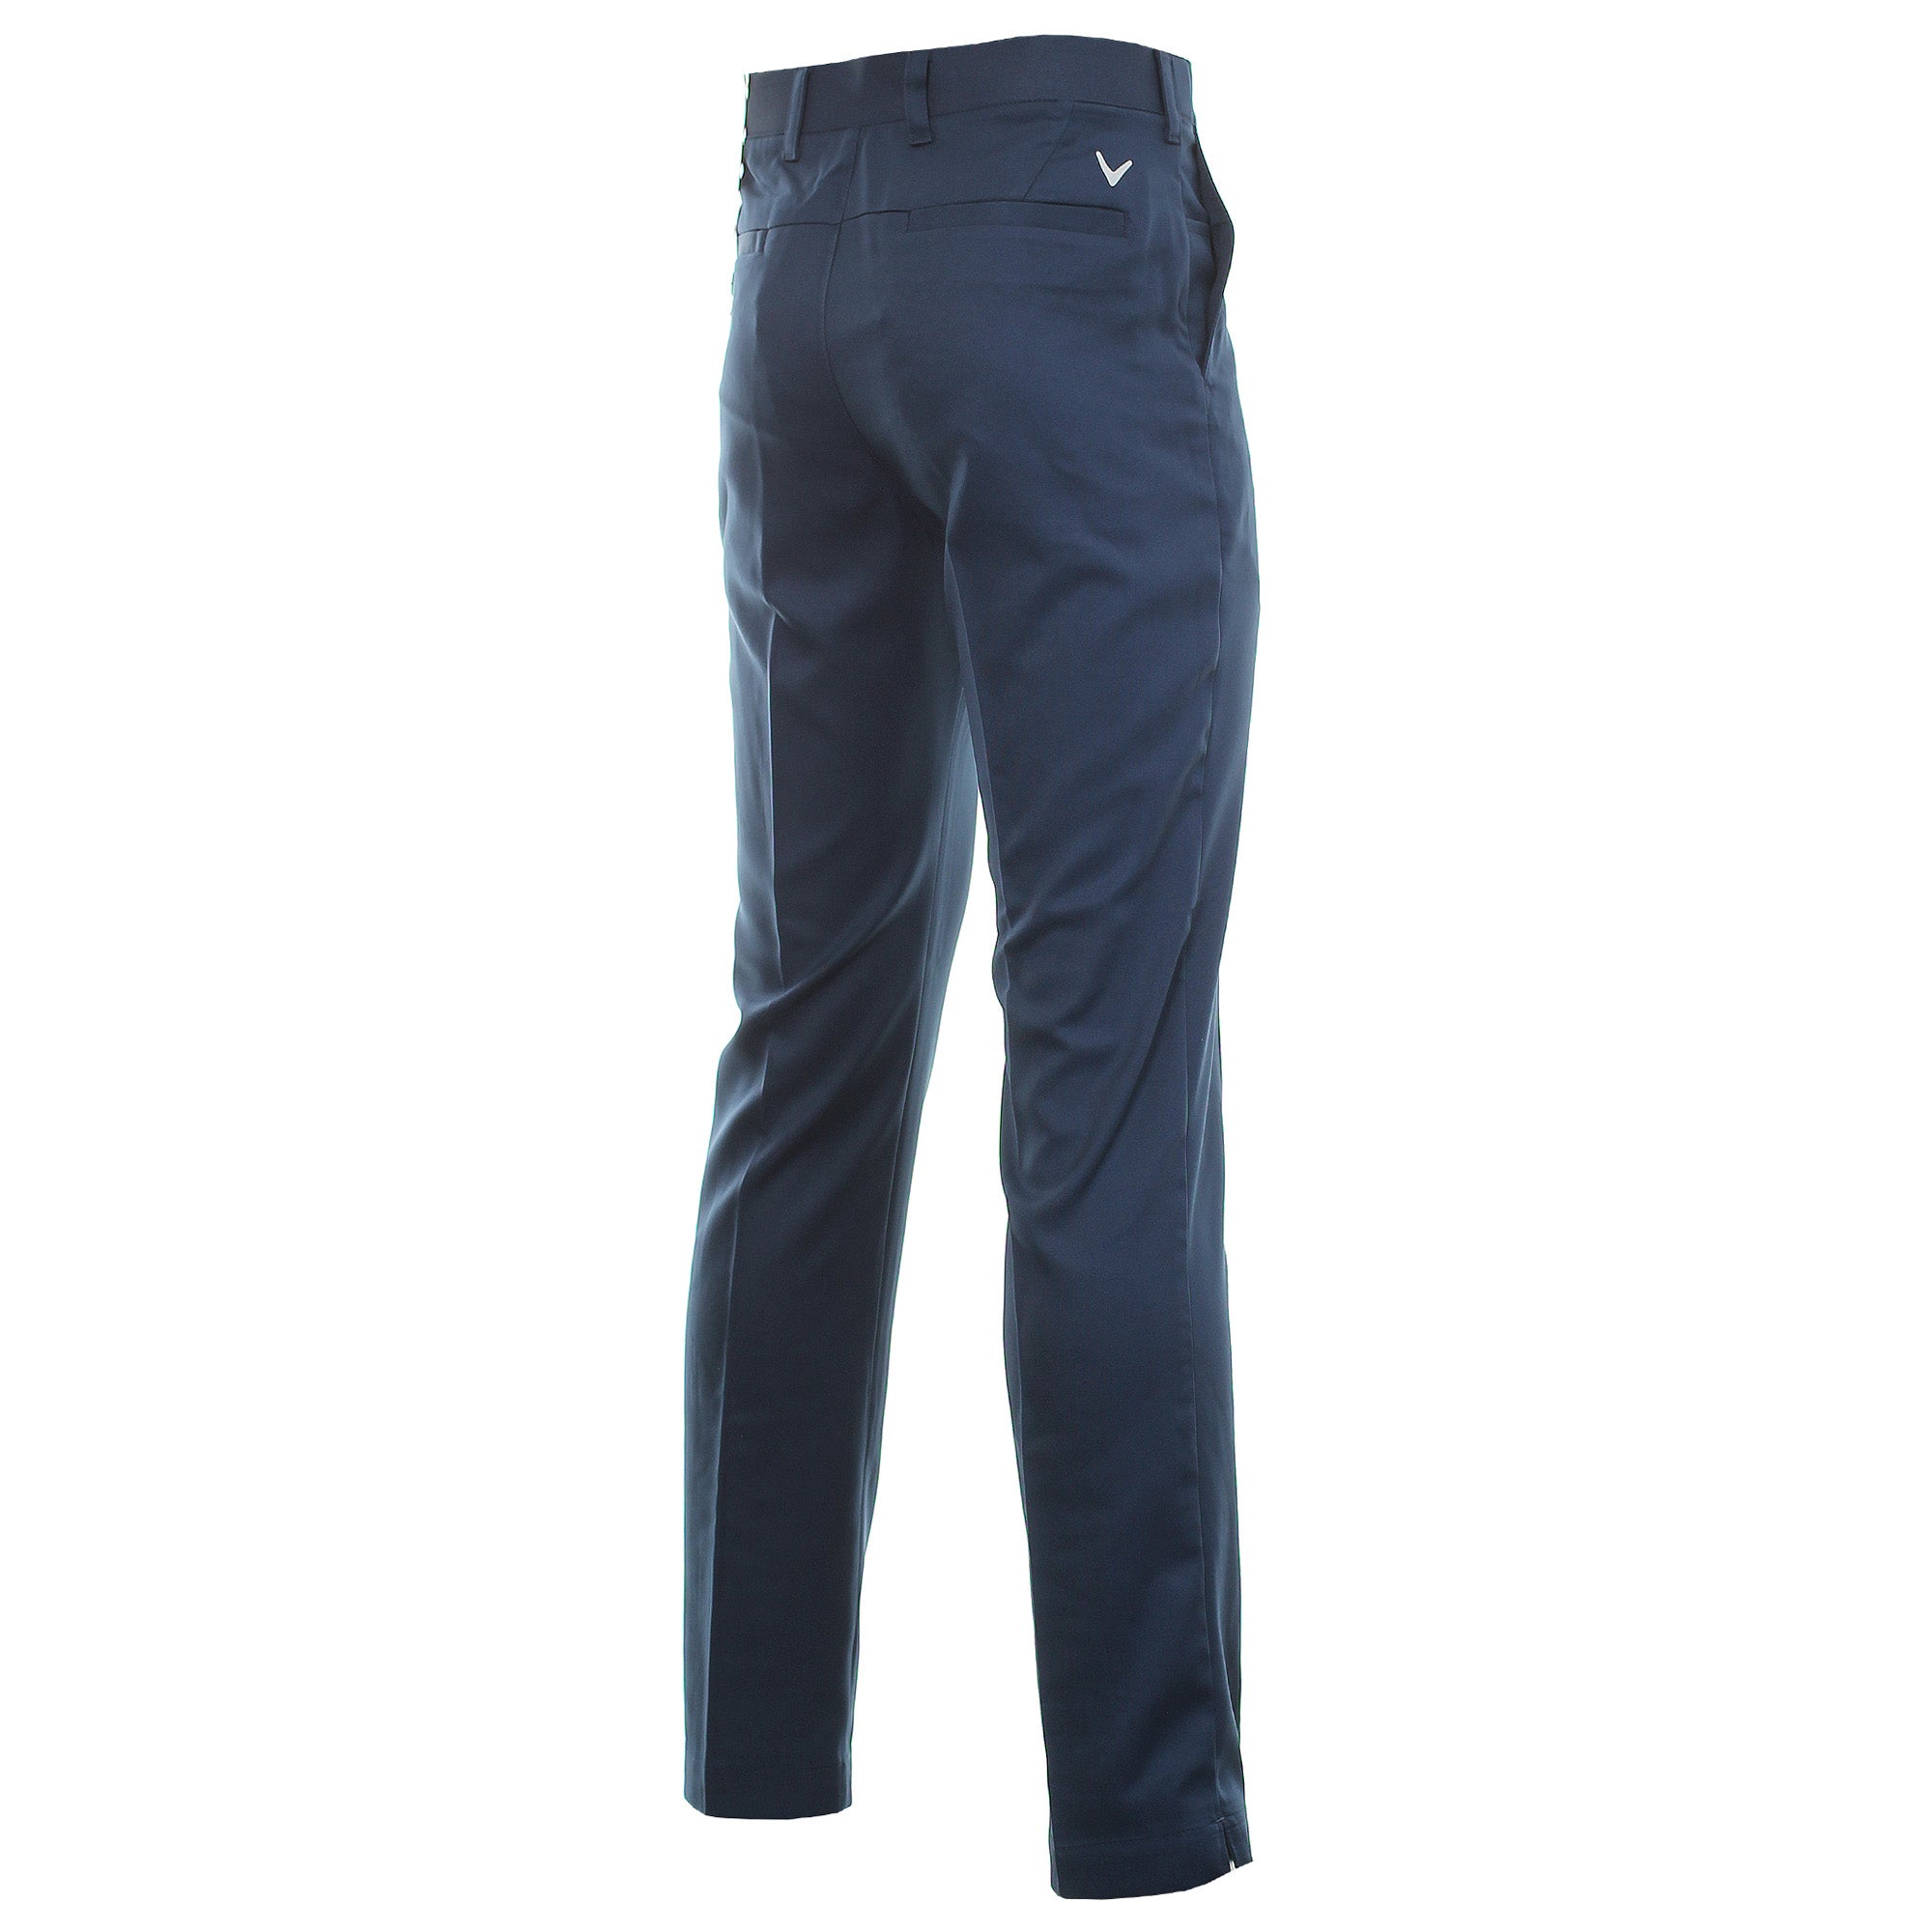 callaway-golf-x-series-tech-trouser-cgbr8045-dress-blue